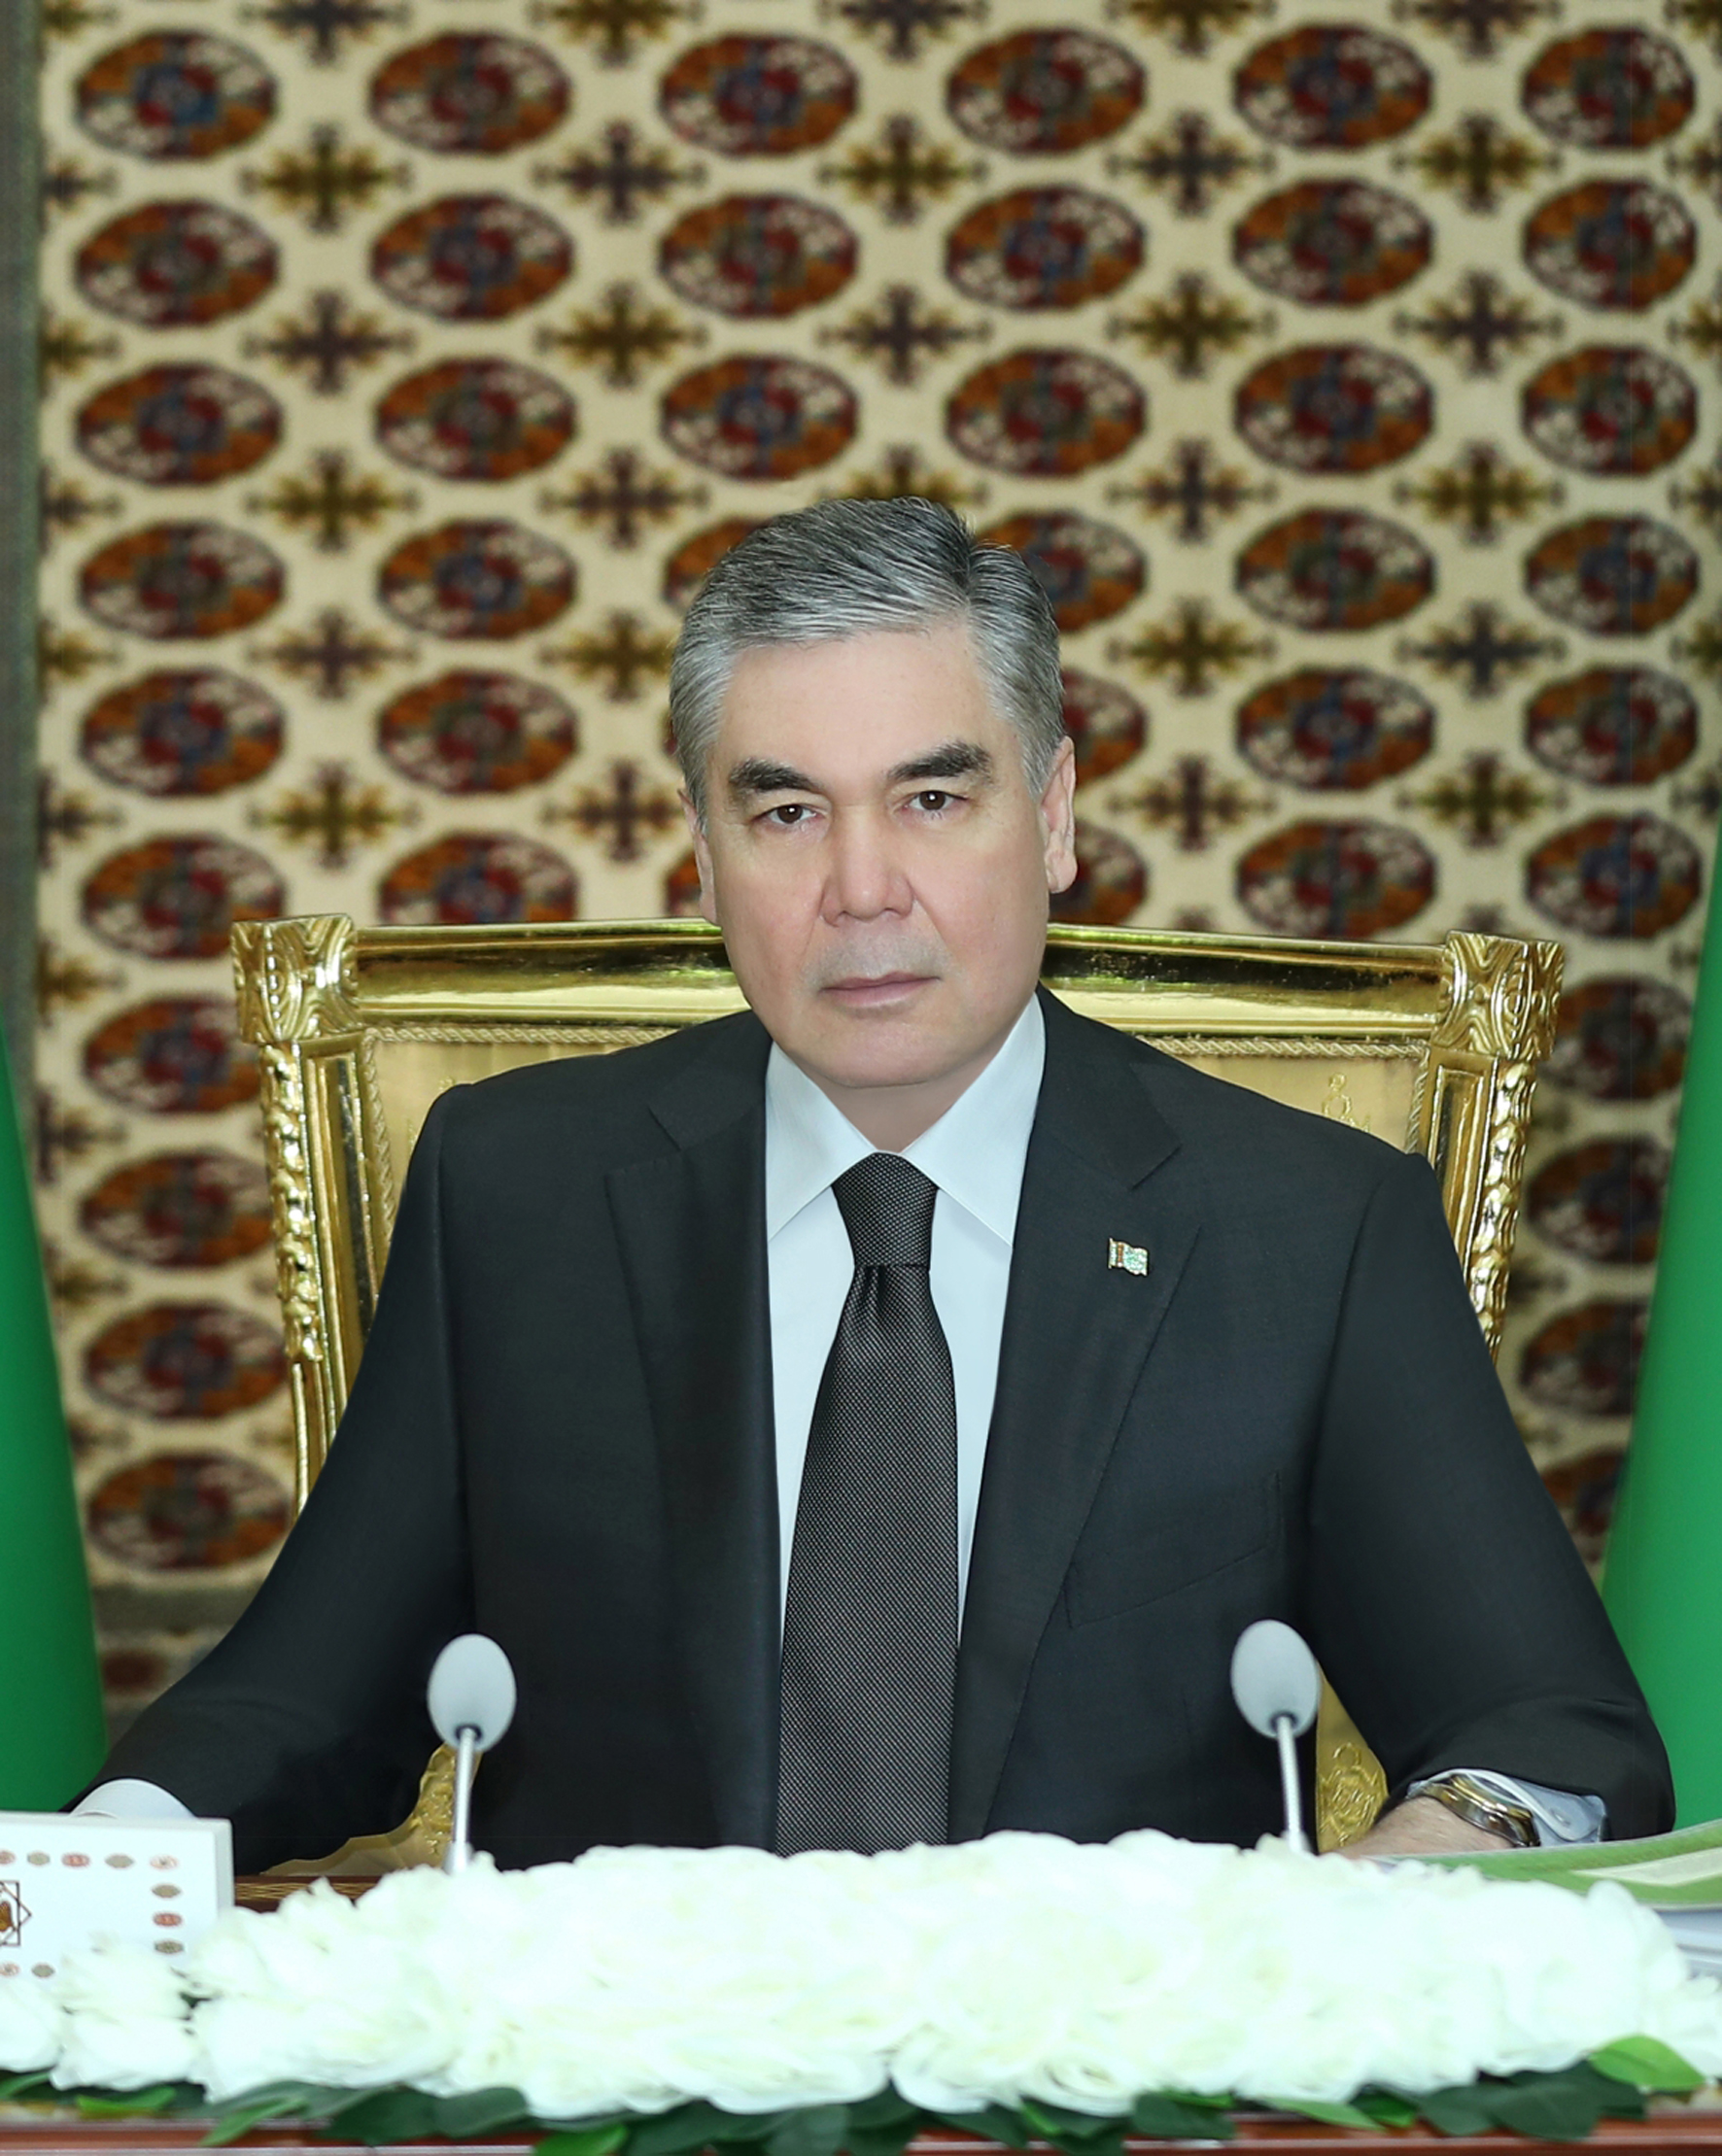 Türkmenistanyň Döwlet howpsuzlyk geňeşiniň giňişleýin mejlisi